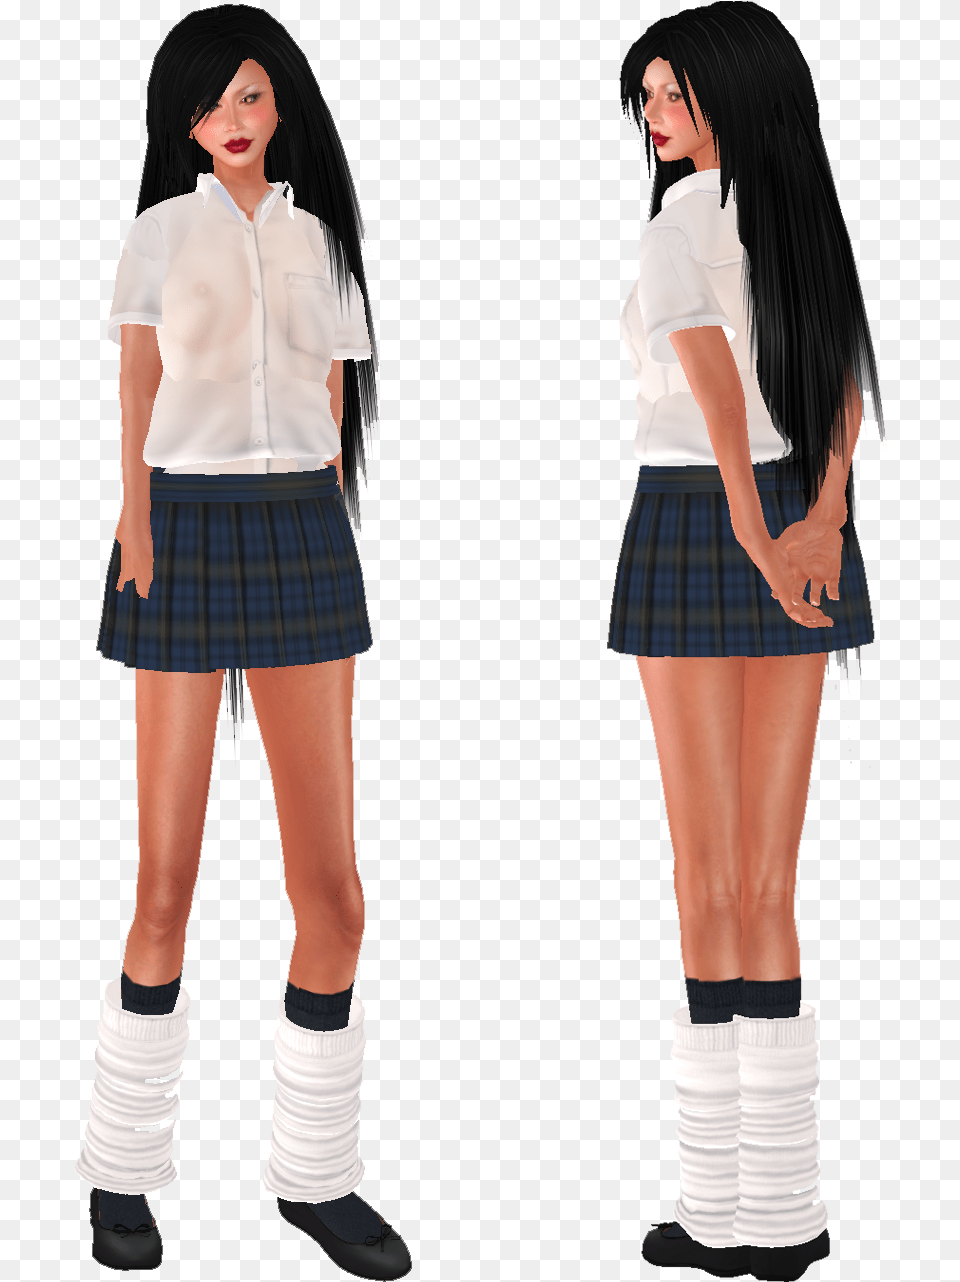 Japanese Girl, Miniskirt, Clothing, Skirt, Person Png